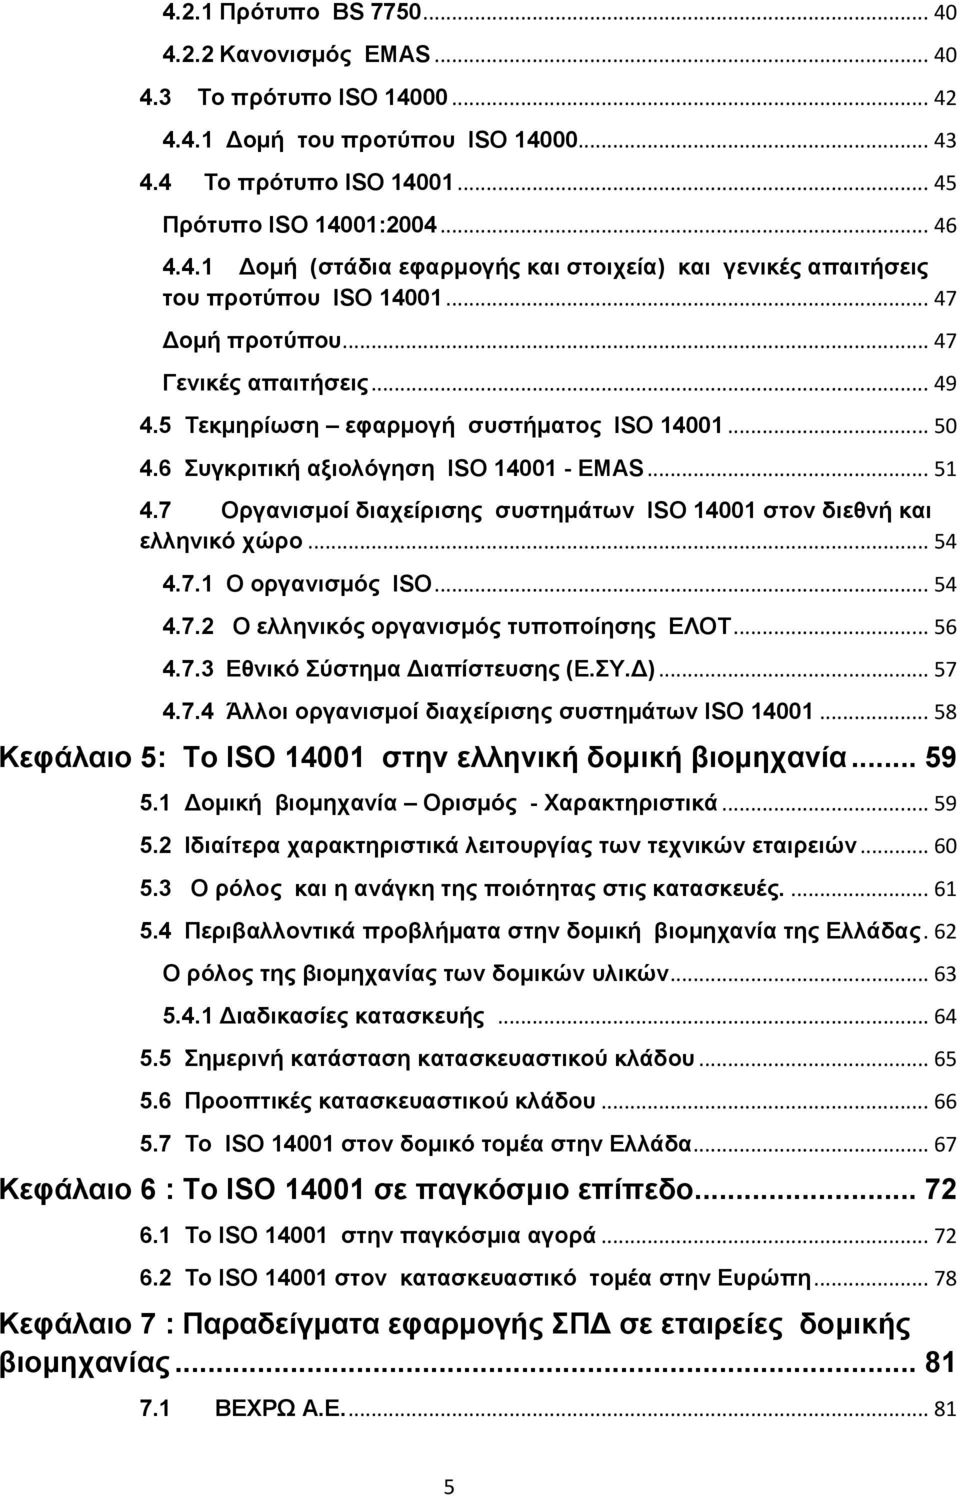 7 Οργανισμοί διαχείρισης συστημάτων ISO 14001 στον διεθνή και ελληνικό χώρο... 54 4.7.1 Ο οργανισμός ISO... 54 4.7.2 Ο ελληνικός οργανισμός τυποποίησης ΕΛΟΤ... 56 4.7.3 Εθνικό Σύστημα Διαπίστευσης (Ε.